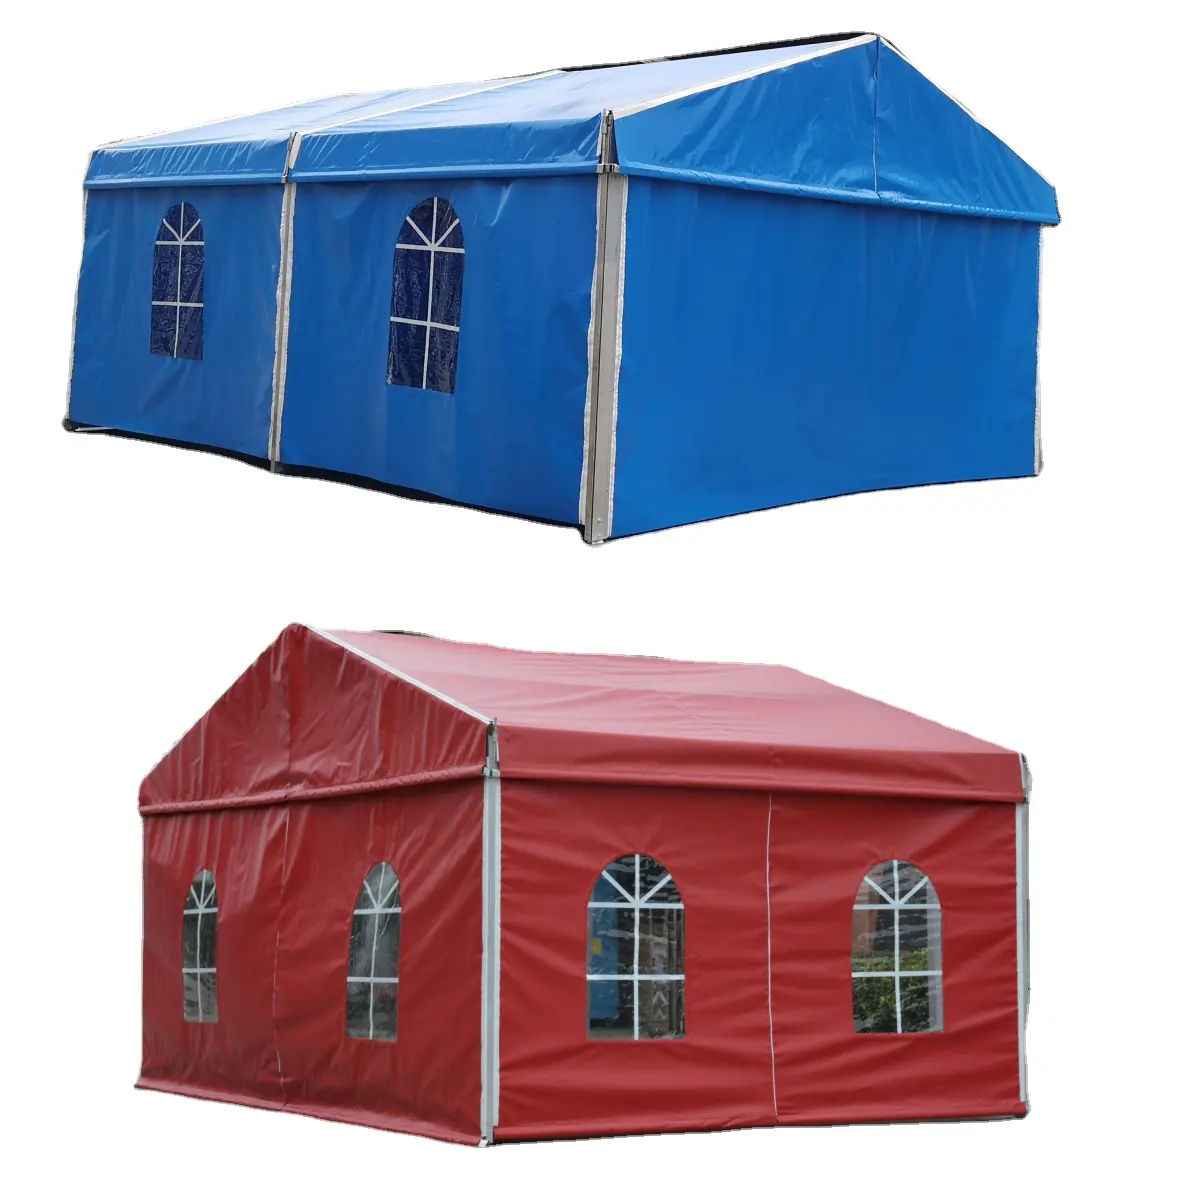 Büyük tuval Marquee çadır fuar büyük çadır parti çadırı tuval marquee pagoda çadırı açık